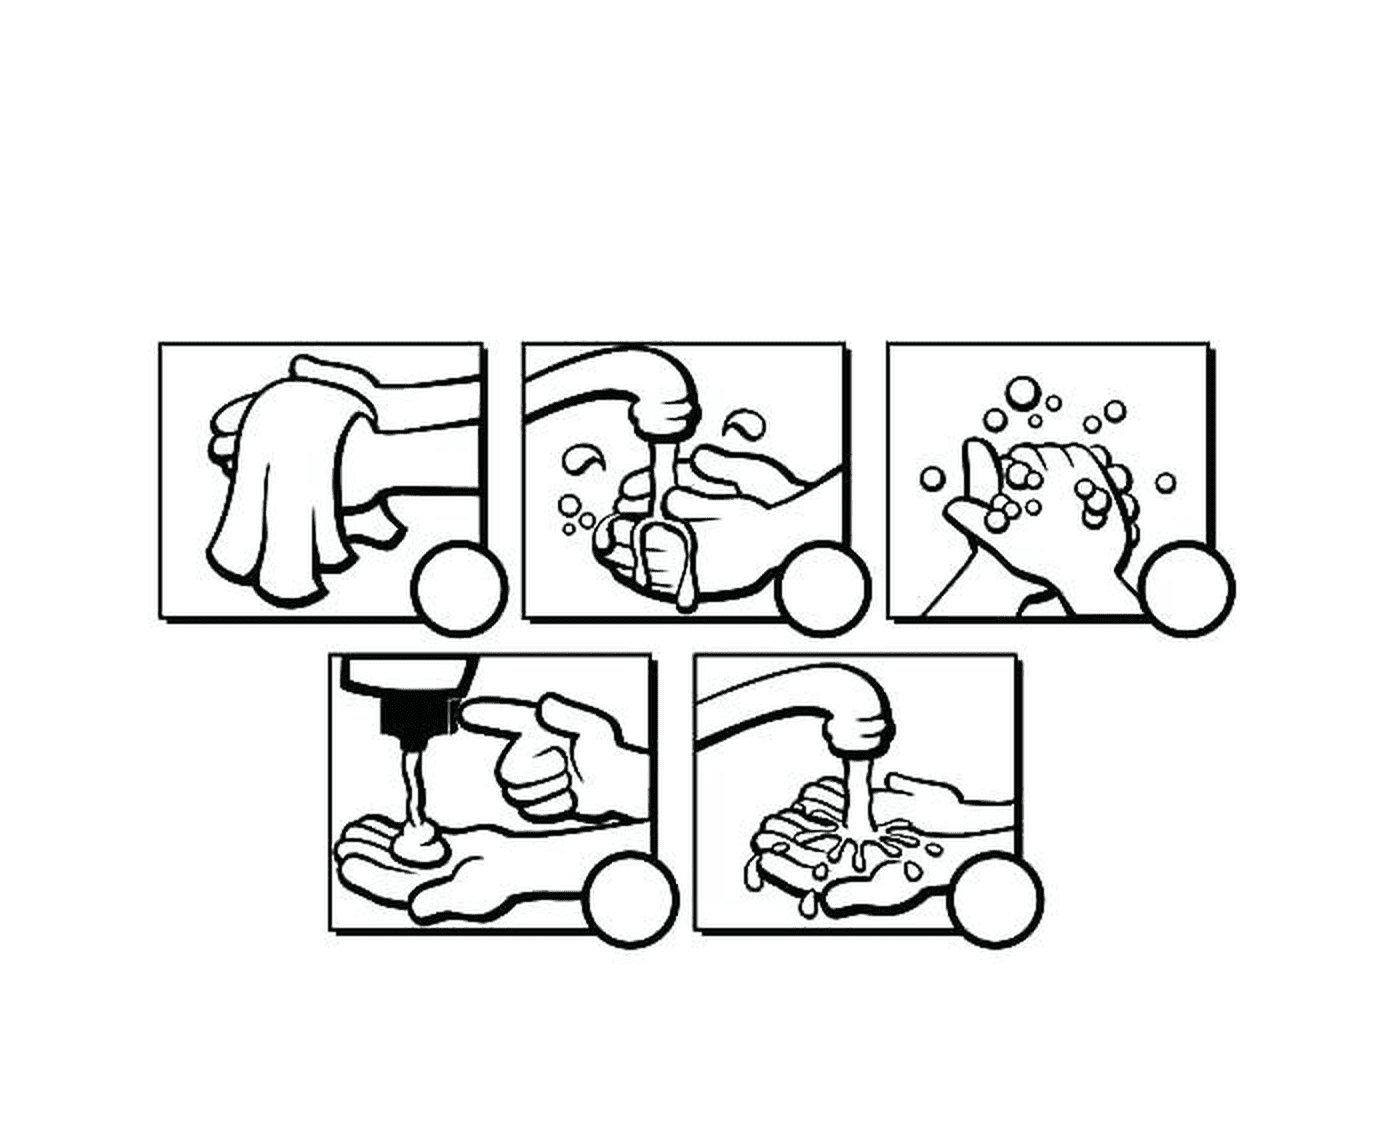   Une série d'images montrant comment se laver les mains 